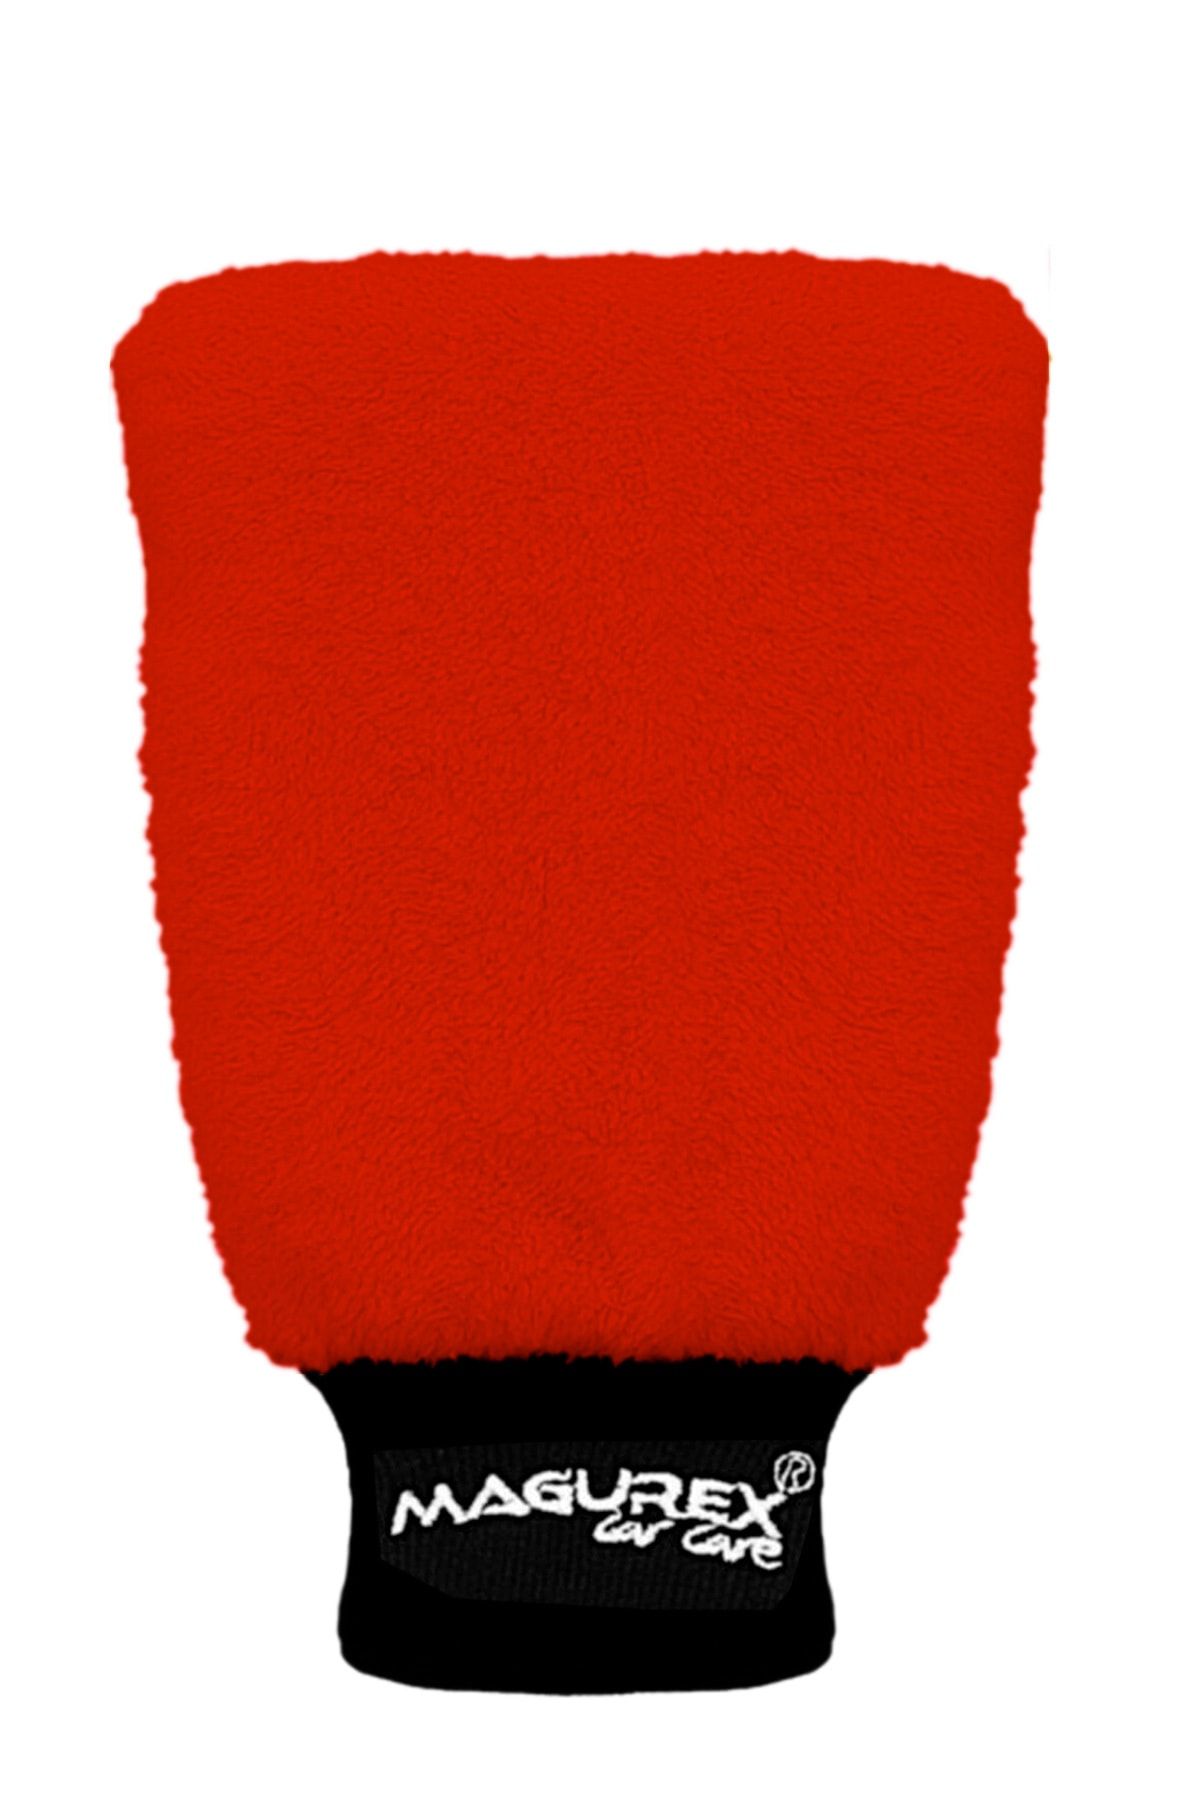 magurex Premium Mikrofiber Araç Yıkama Ve Wax Cila Eldiveni - Kırmızı